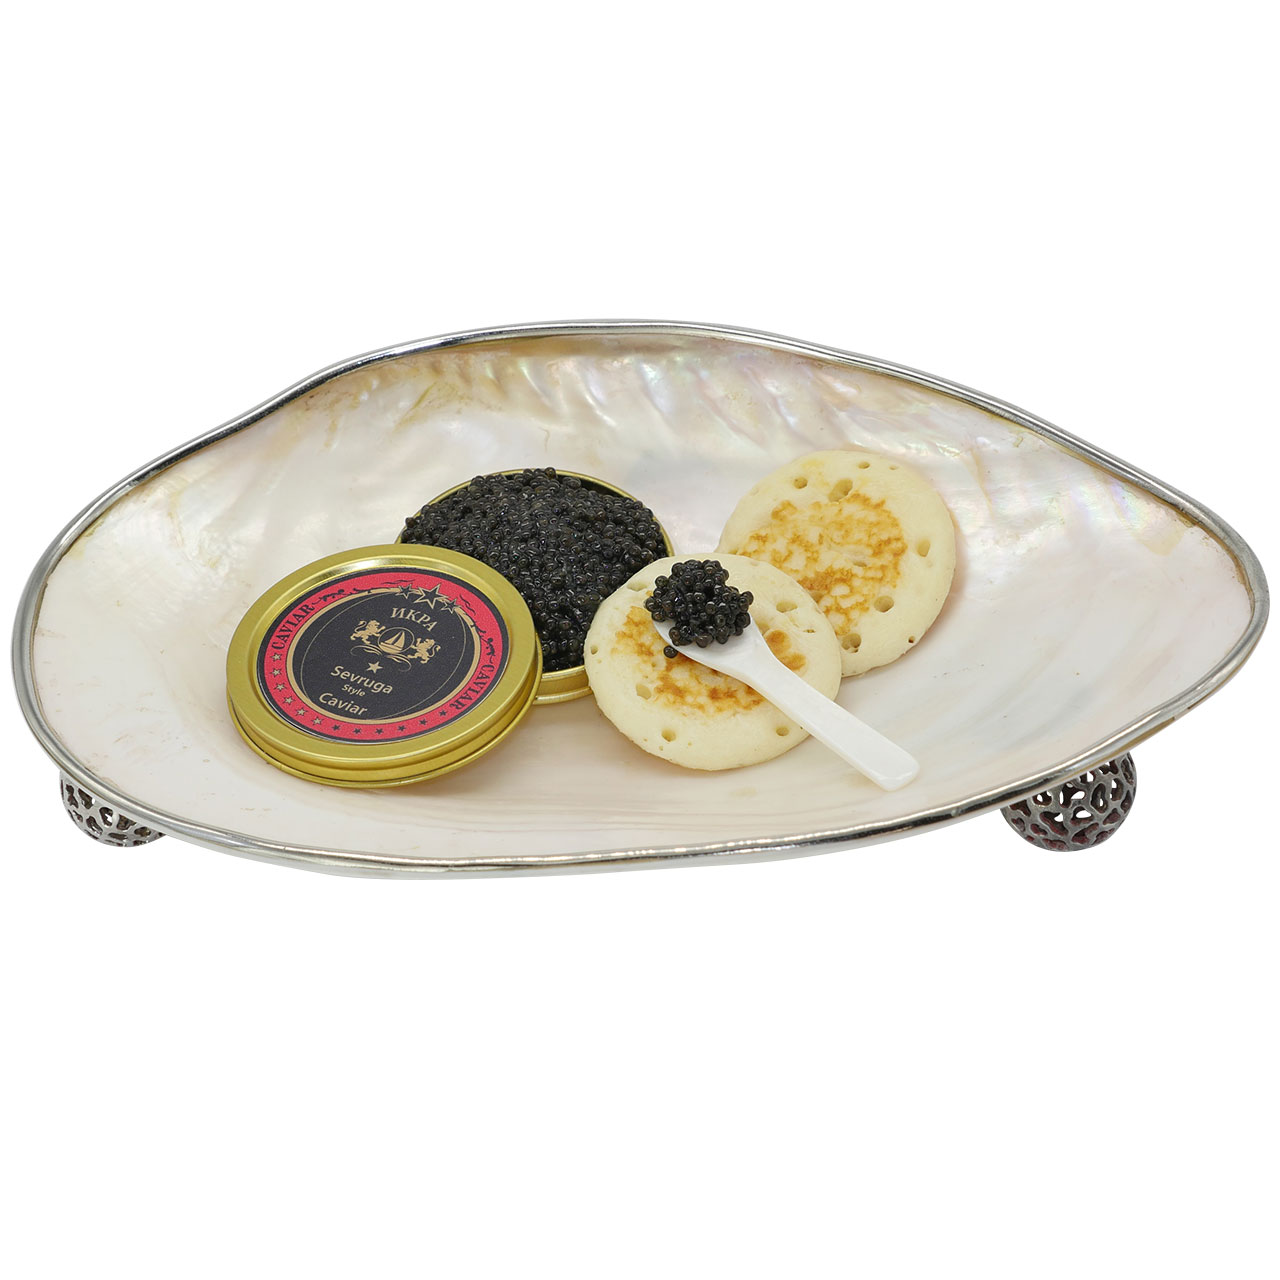 Kaviar vom sibirischen Stör